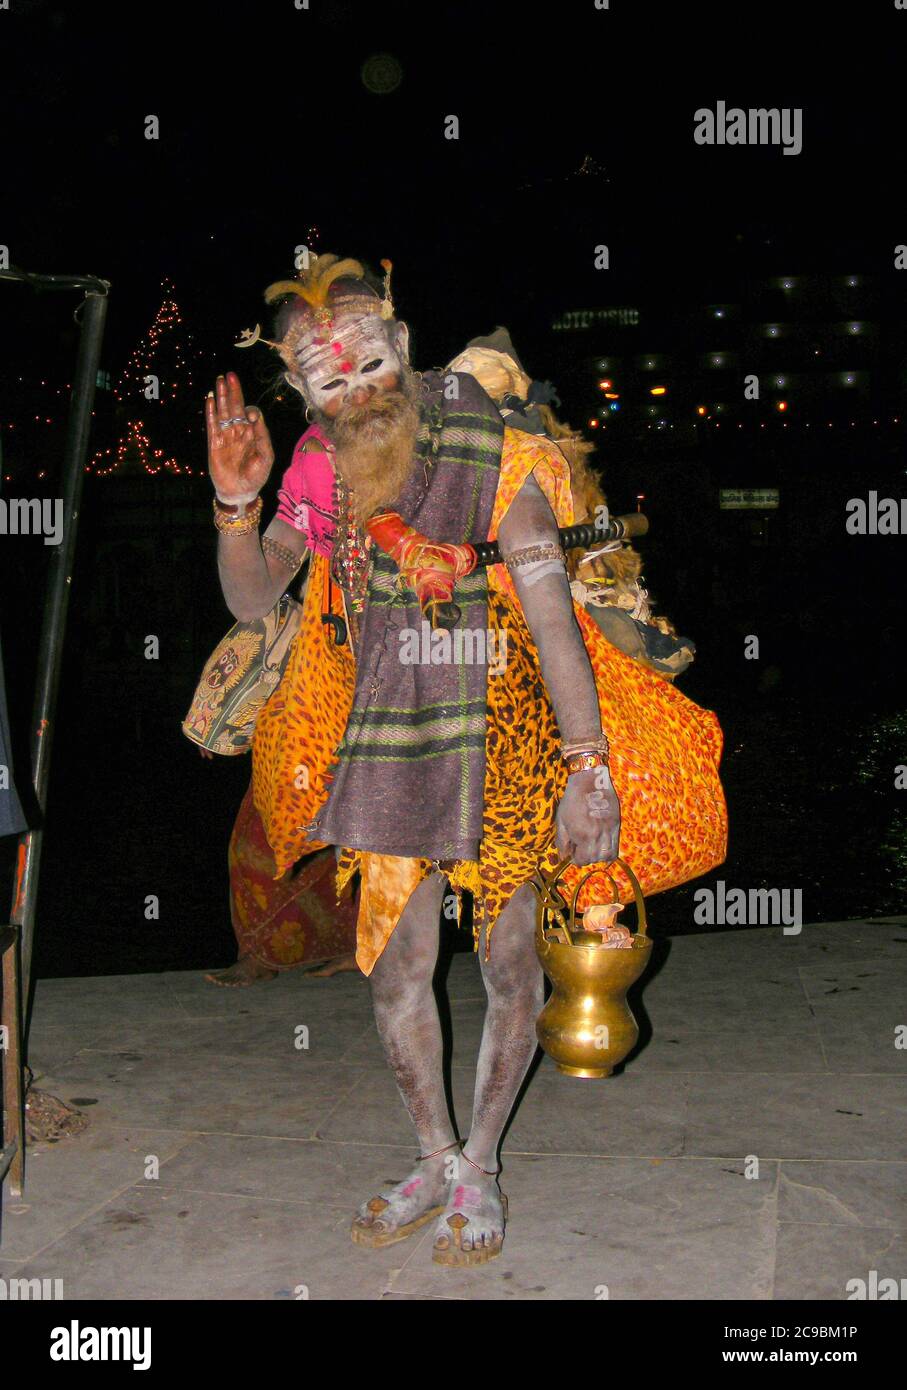 Aghori sadhu, appartenant à une secte de Shiva adorant les ascétiques, effectuant des méditations nocturnes dans les terres hantantes des ghats hindous. Banque D'Images